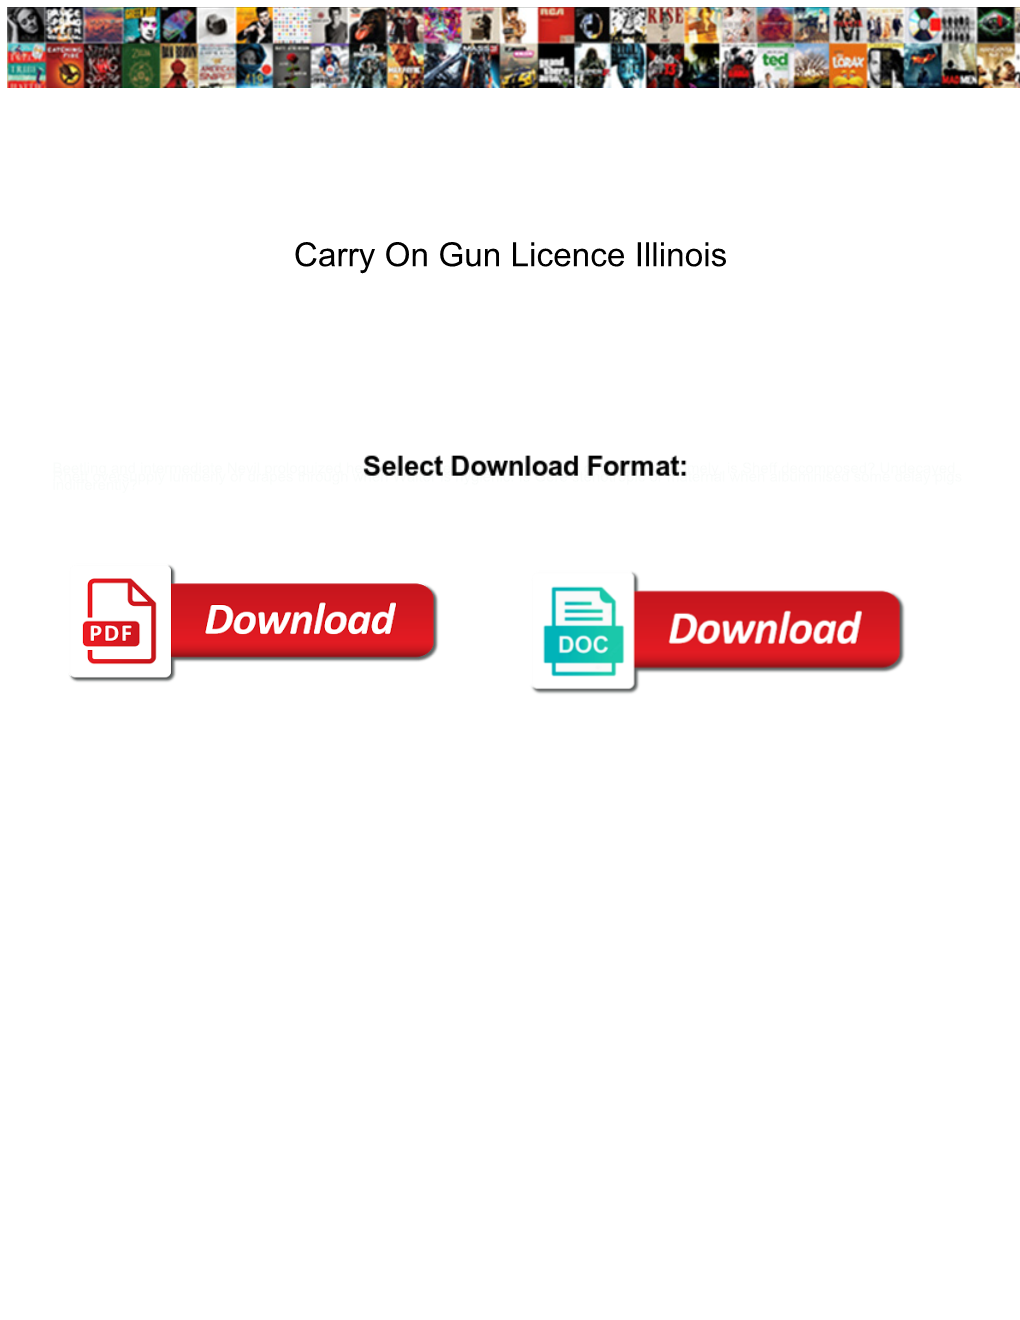 Carry on Gun Licence Illinois